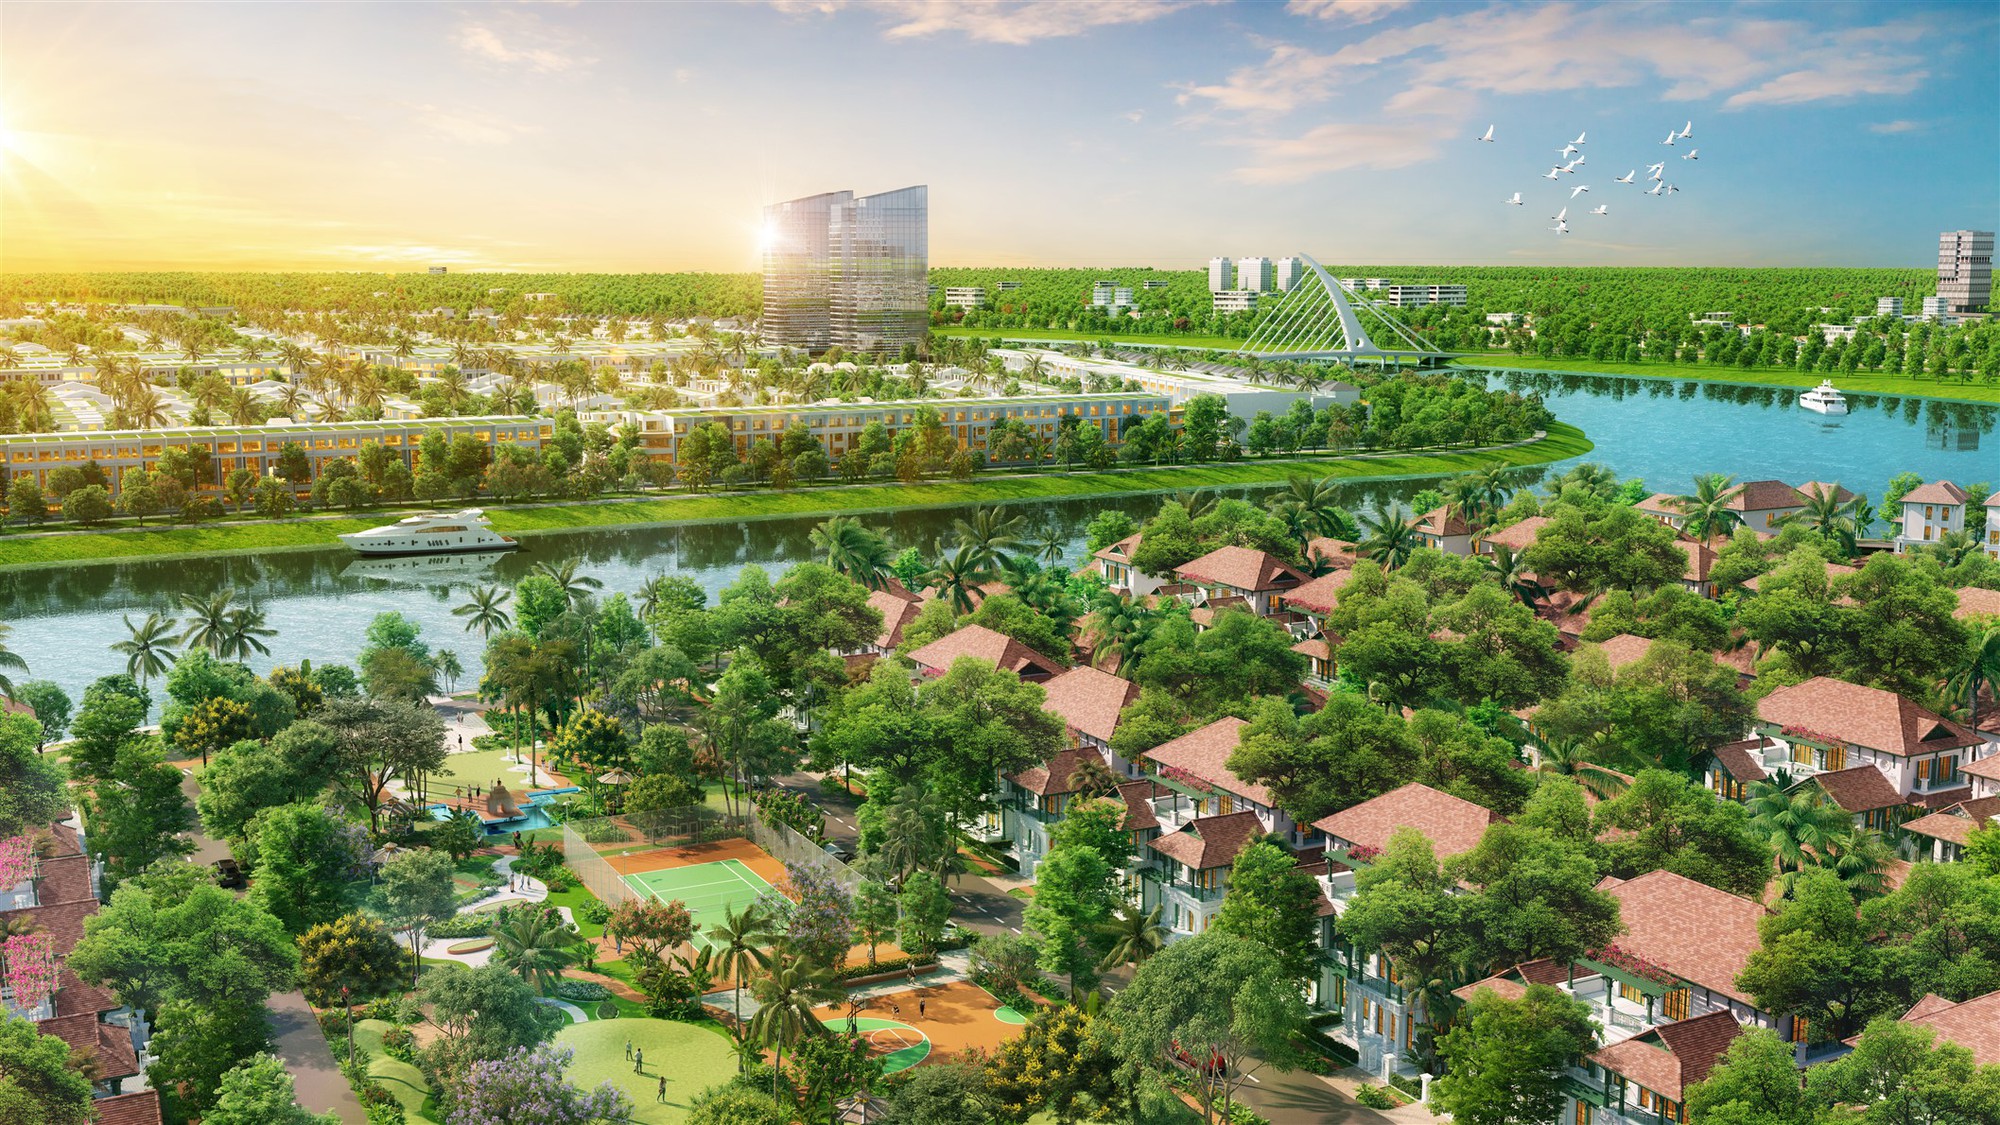 Khu vực Đông Nam: Tâm điểm phát triển, thu hút đầu tư của Đà Nẵng - Ảnh 4.